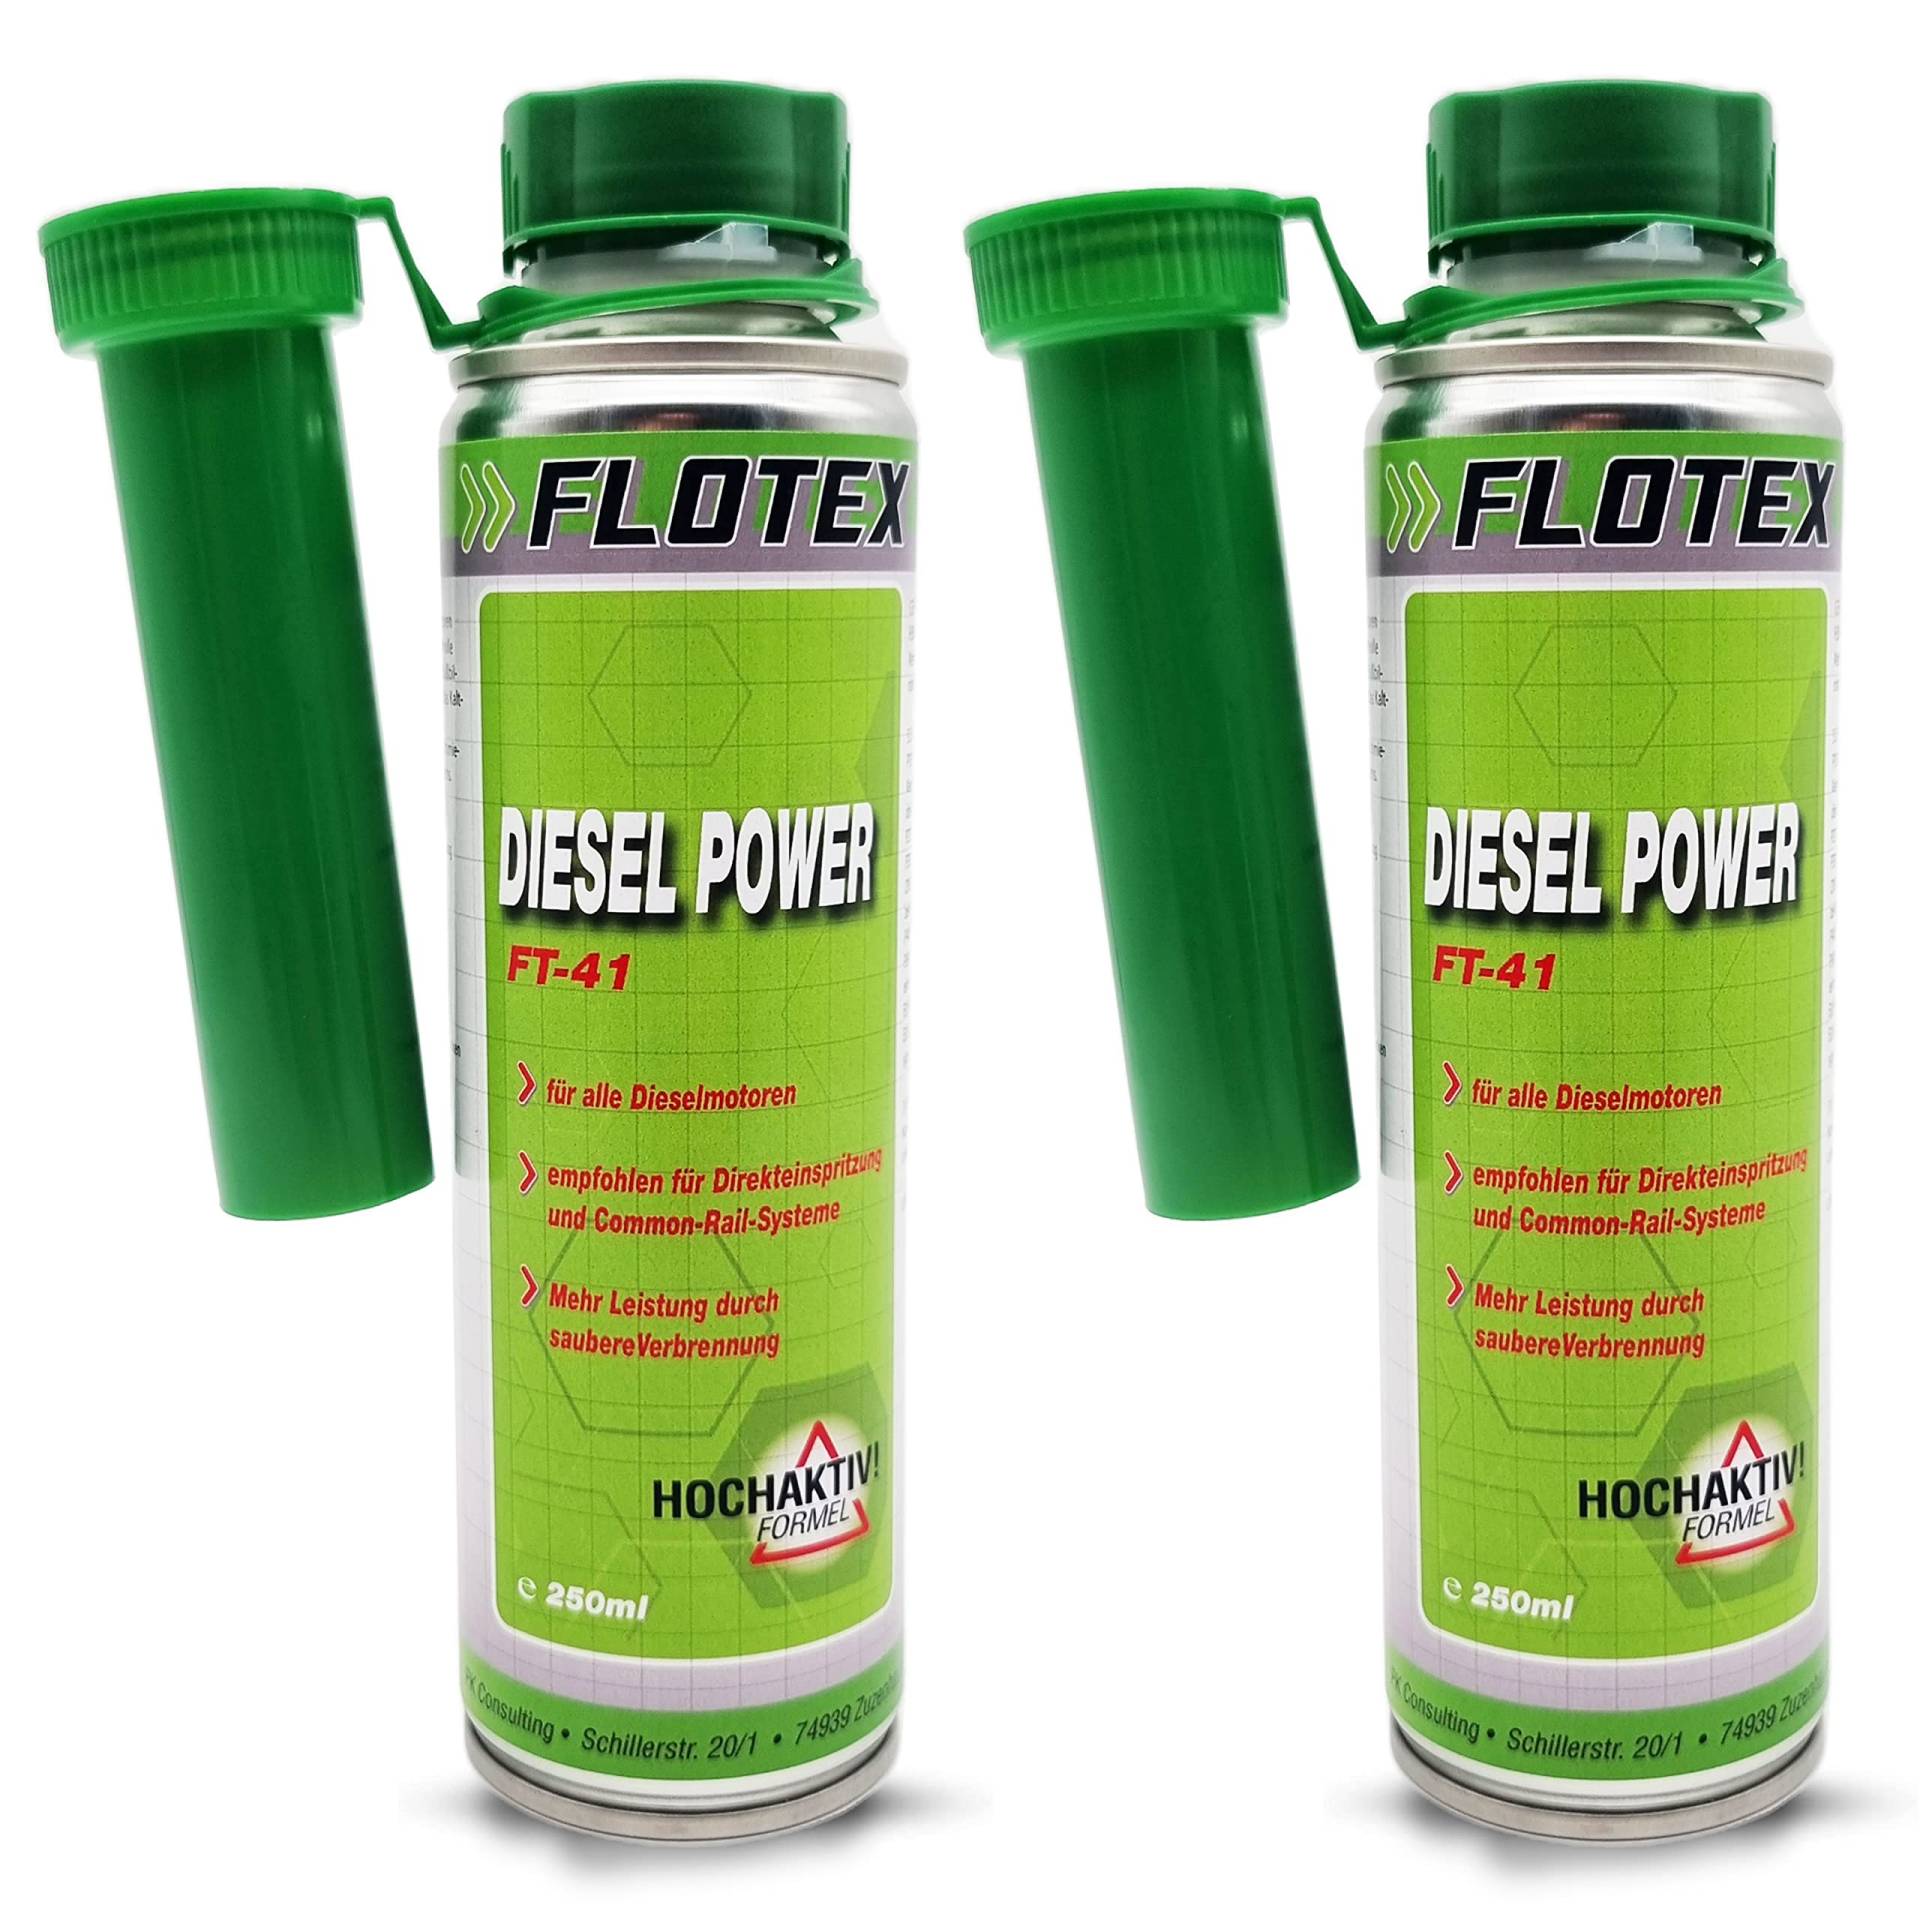 Flotex Diesel Power, 2 x 250ml Additiv Kraftstoffsystemzusatz für alle Dieselmotoren von Flotex